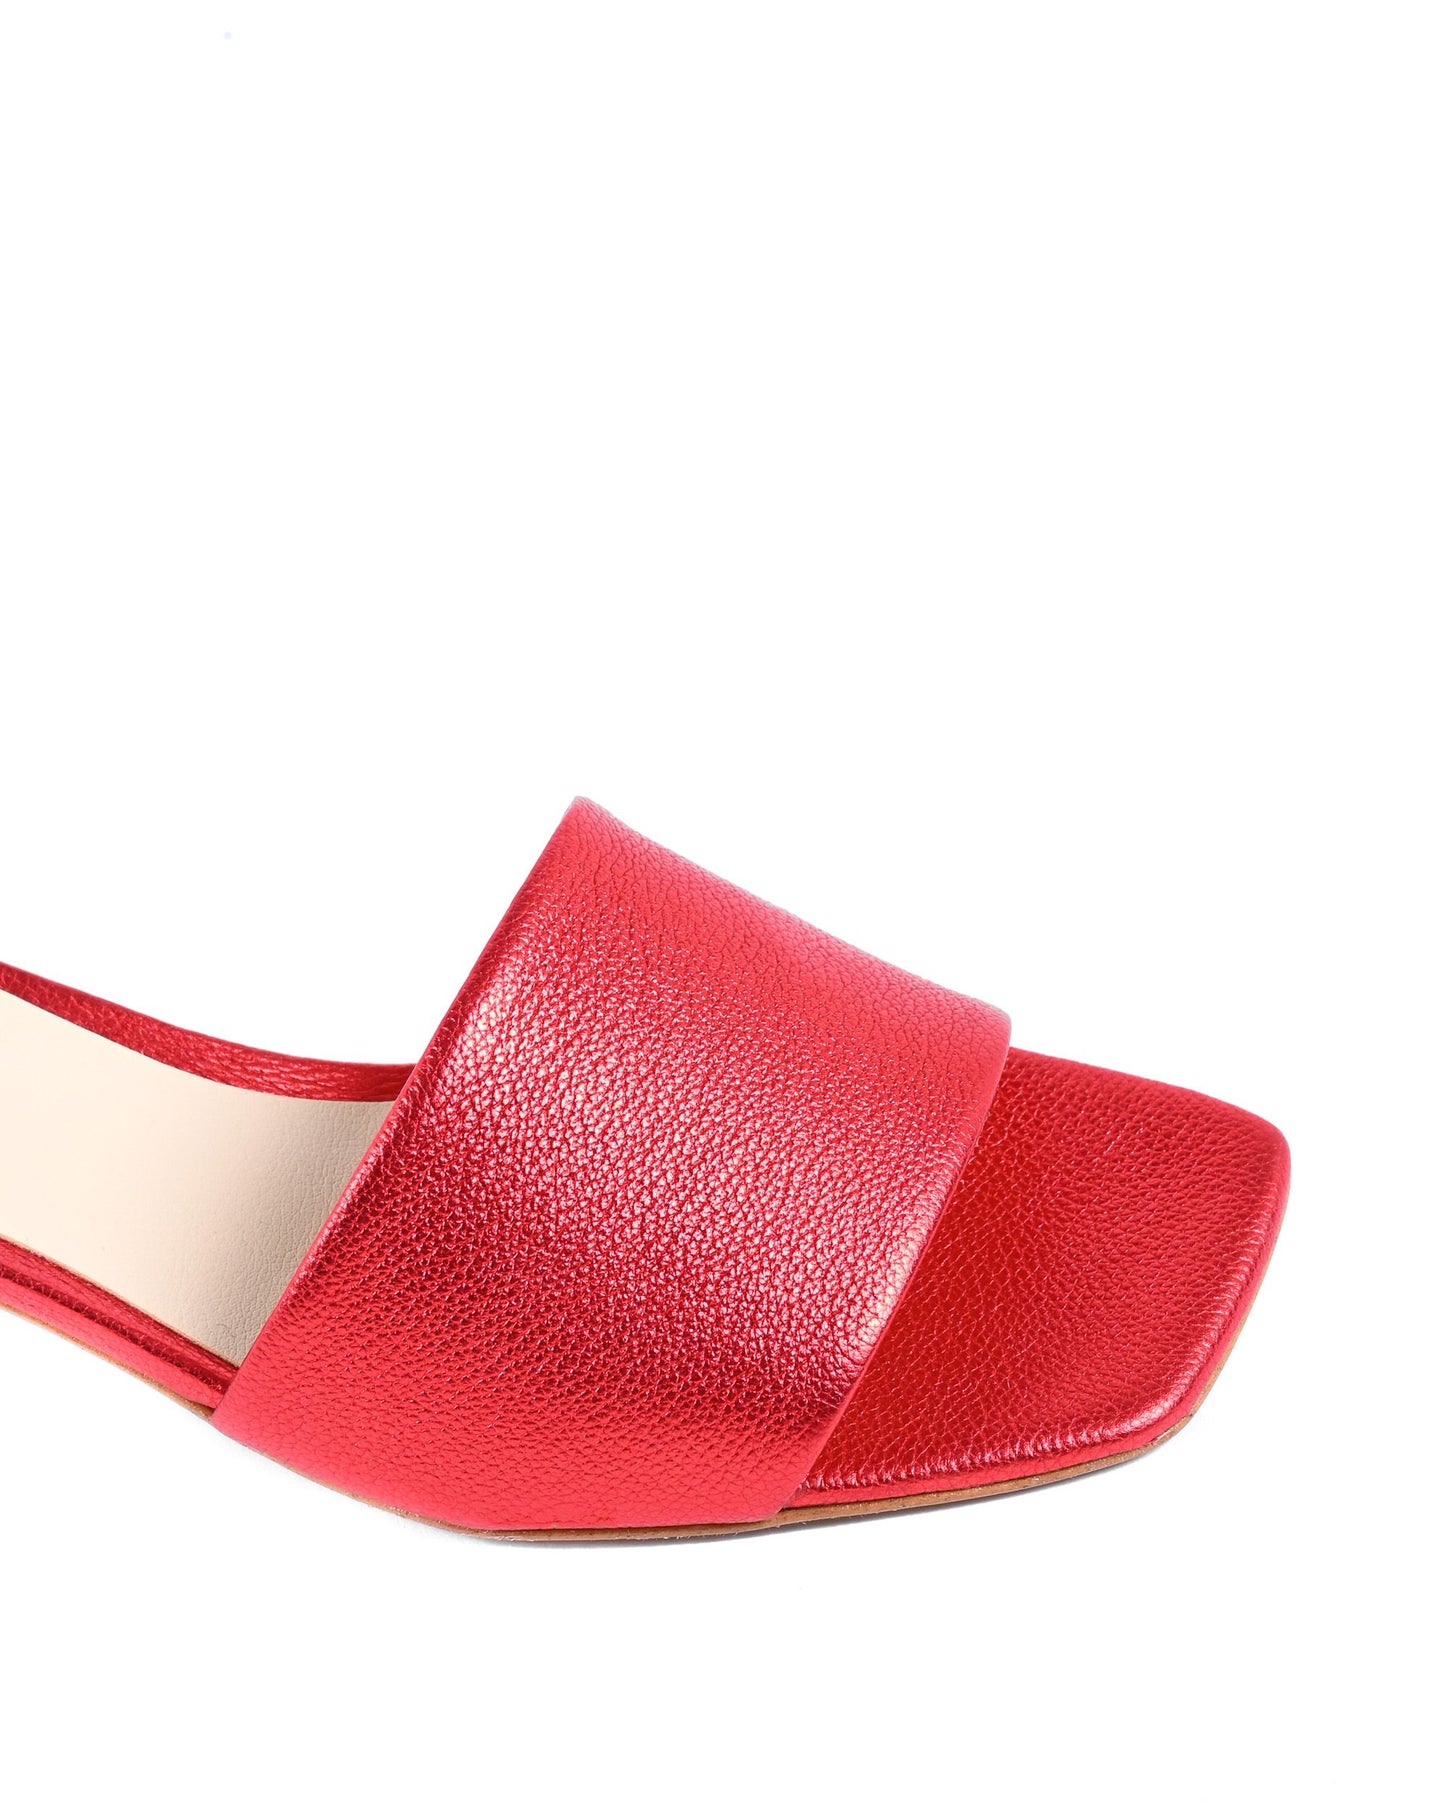 19V69 Italia Womens Sandal Red NEPER VIT. BOT. ROSSO